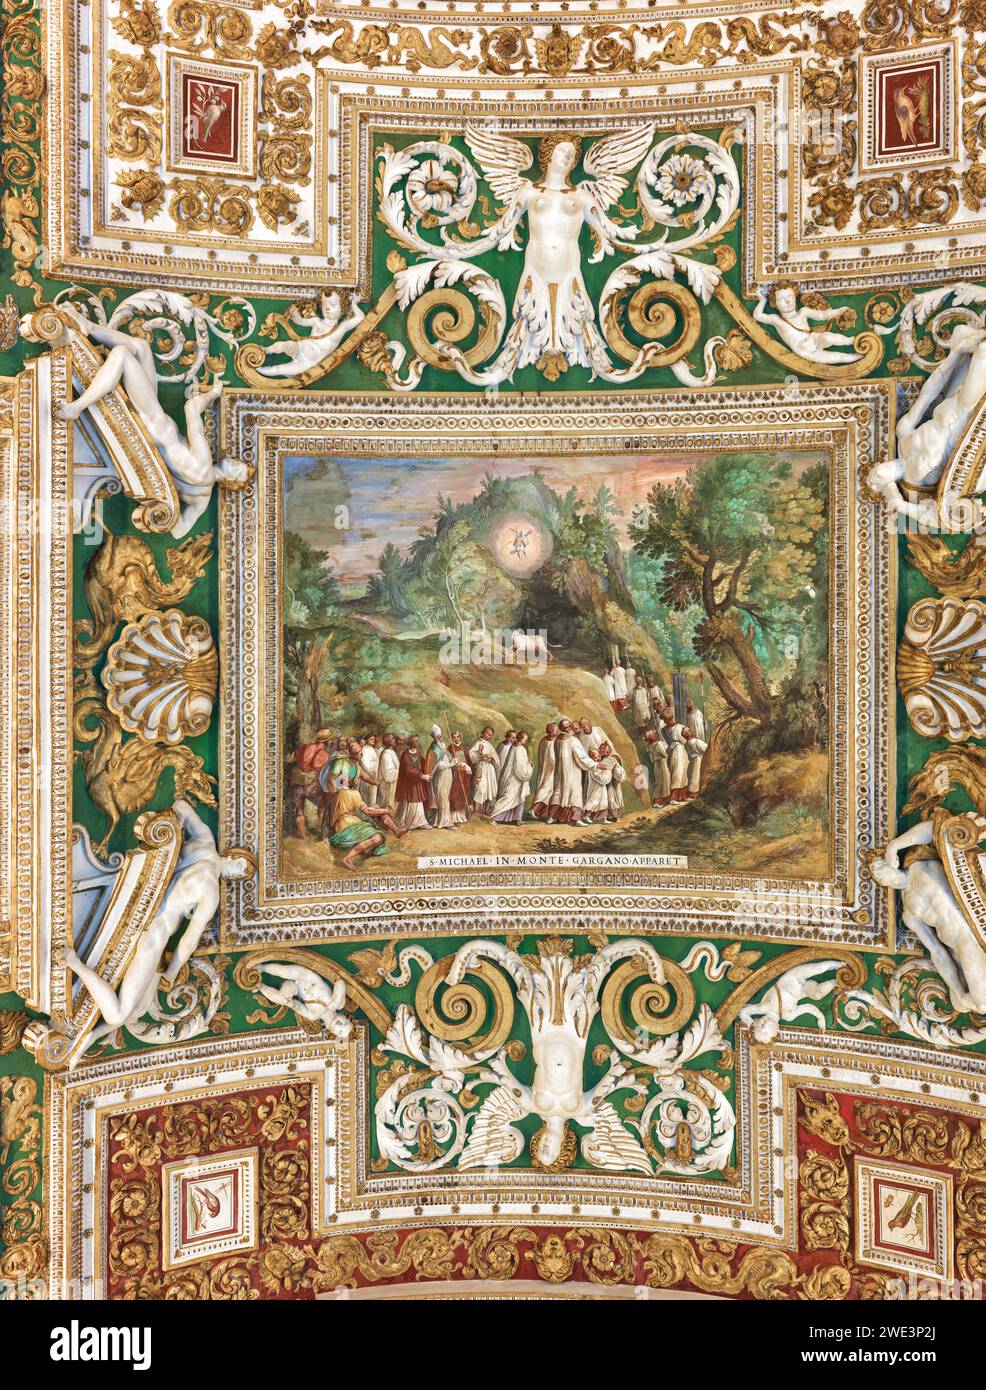 Pittura (San Michele appare nel Monte Gargano) e decorazioni sul soffitto nella galleria di mappe geografiche, Musei Vaticani, Roma, Italia. Foto Stock